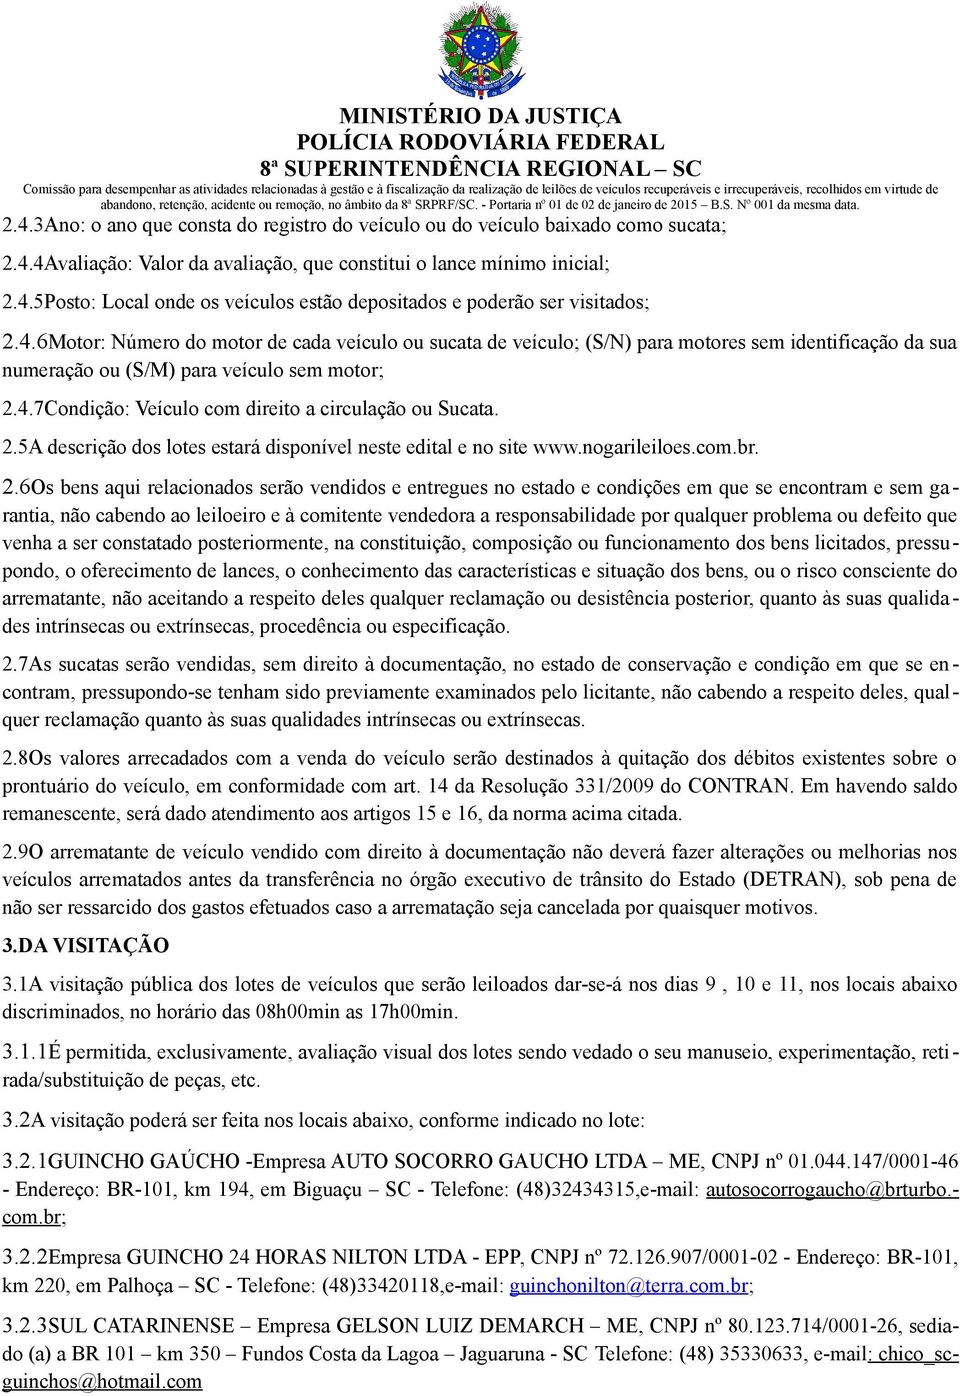 2.5A descrição dos lotes estará disponível neste edital e no site www.nogarileiloes.com.br. 2.